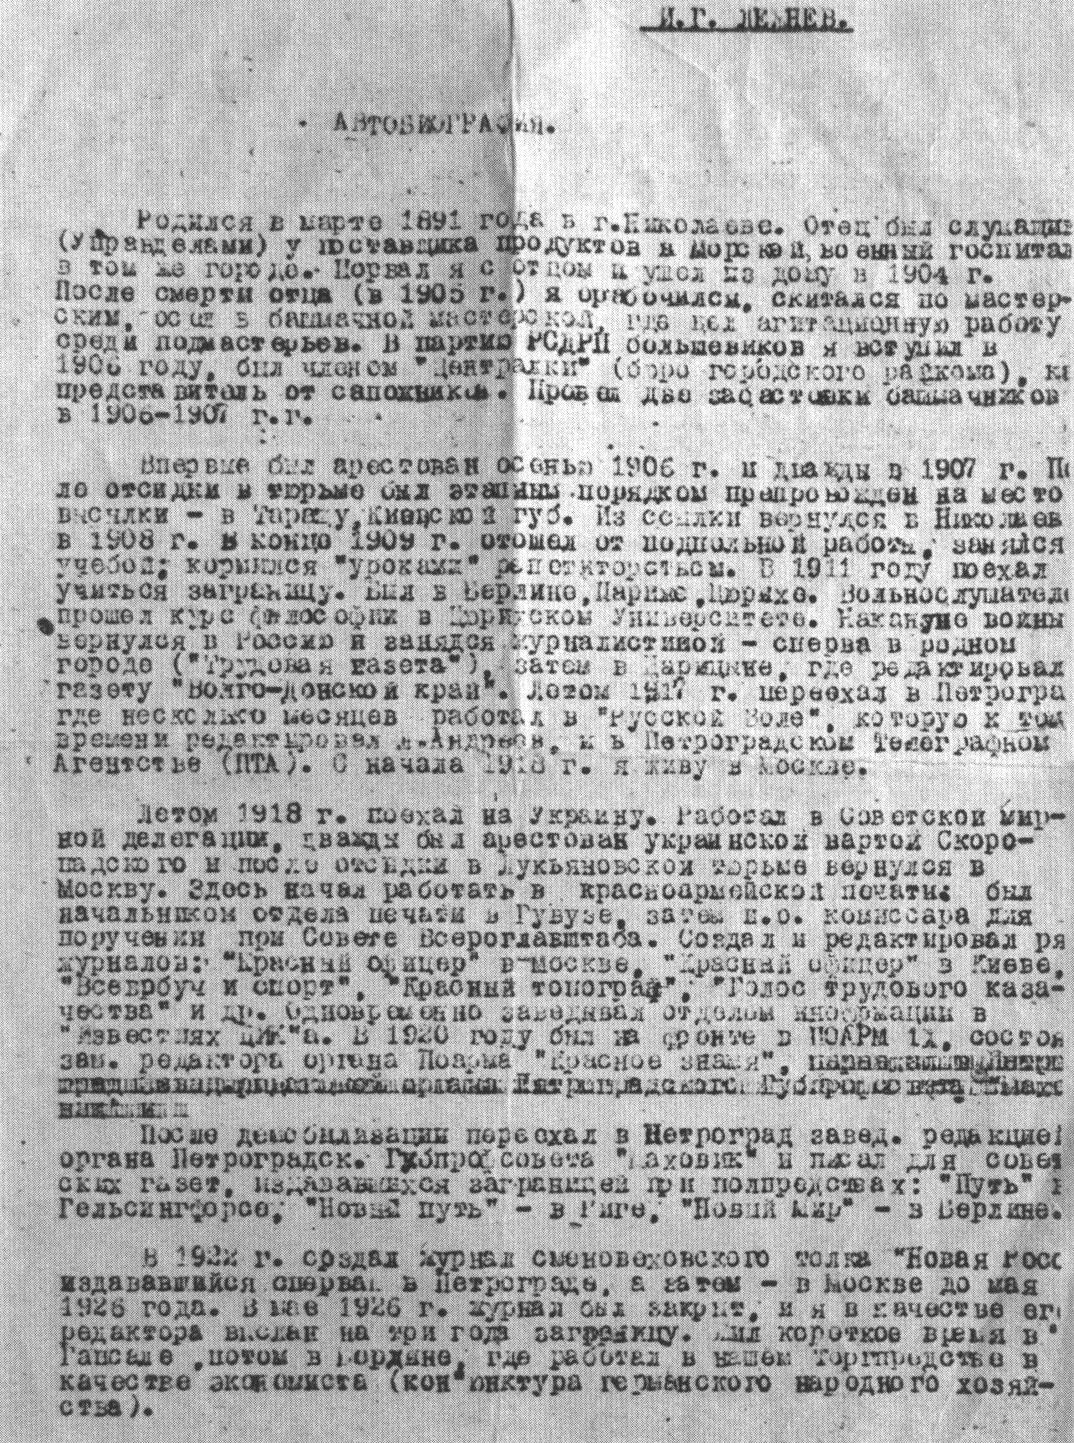 Автобиография И.Г. Лежнева (первый лист): машинопись, предположительно вторая половина 1940-х годов. Из коллекции М.О. Чудаковой